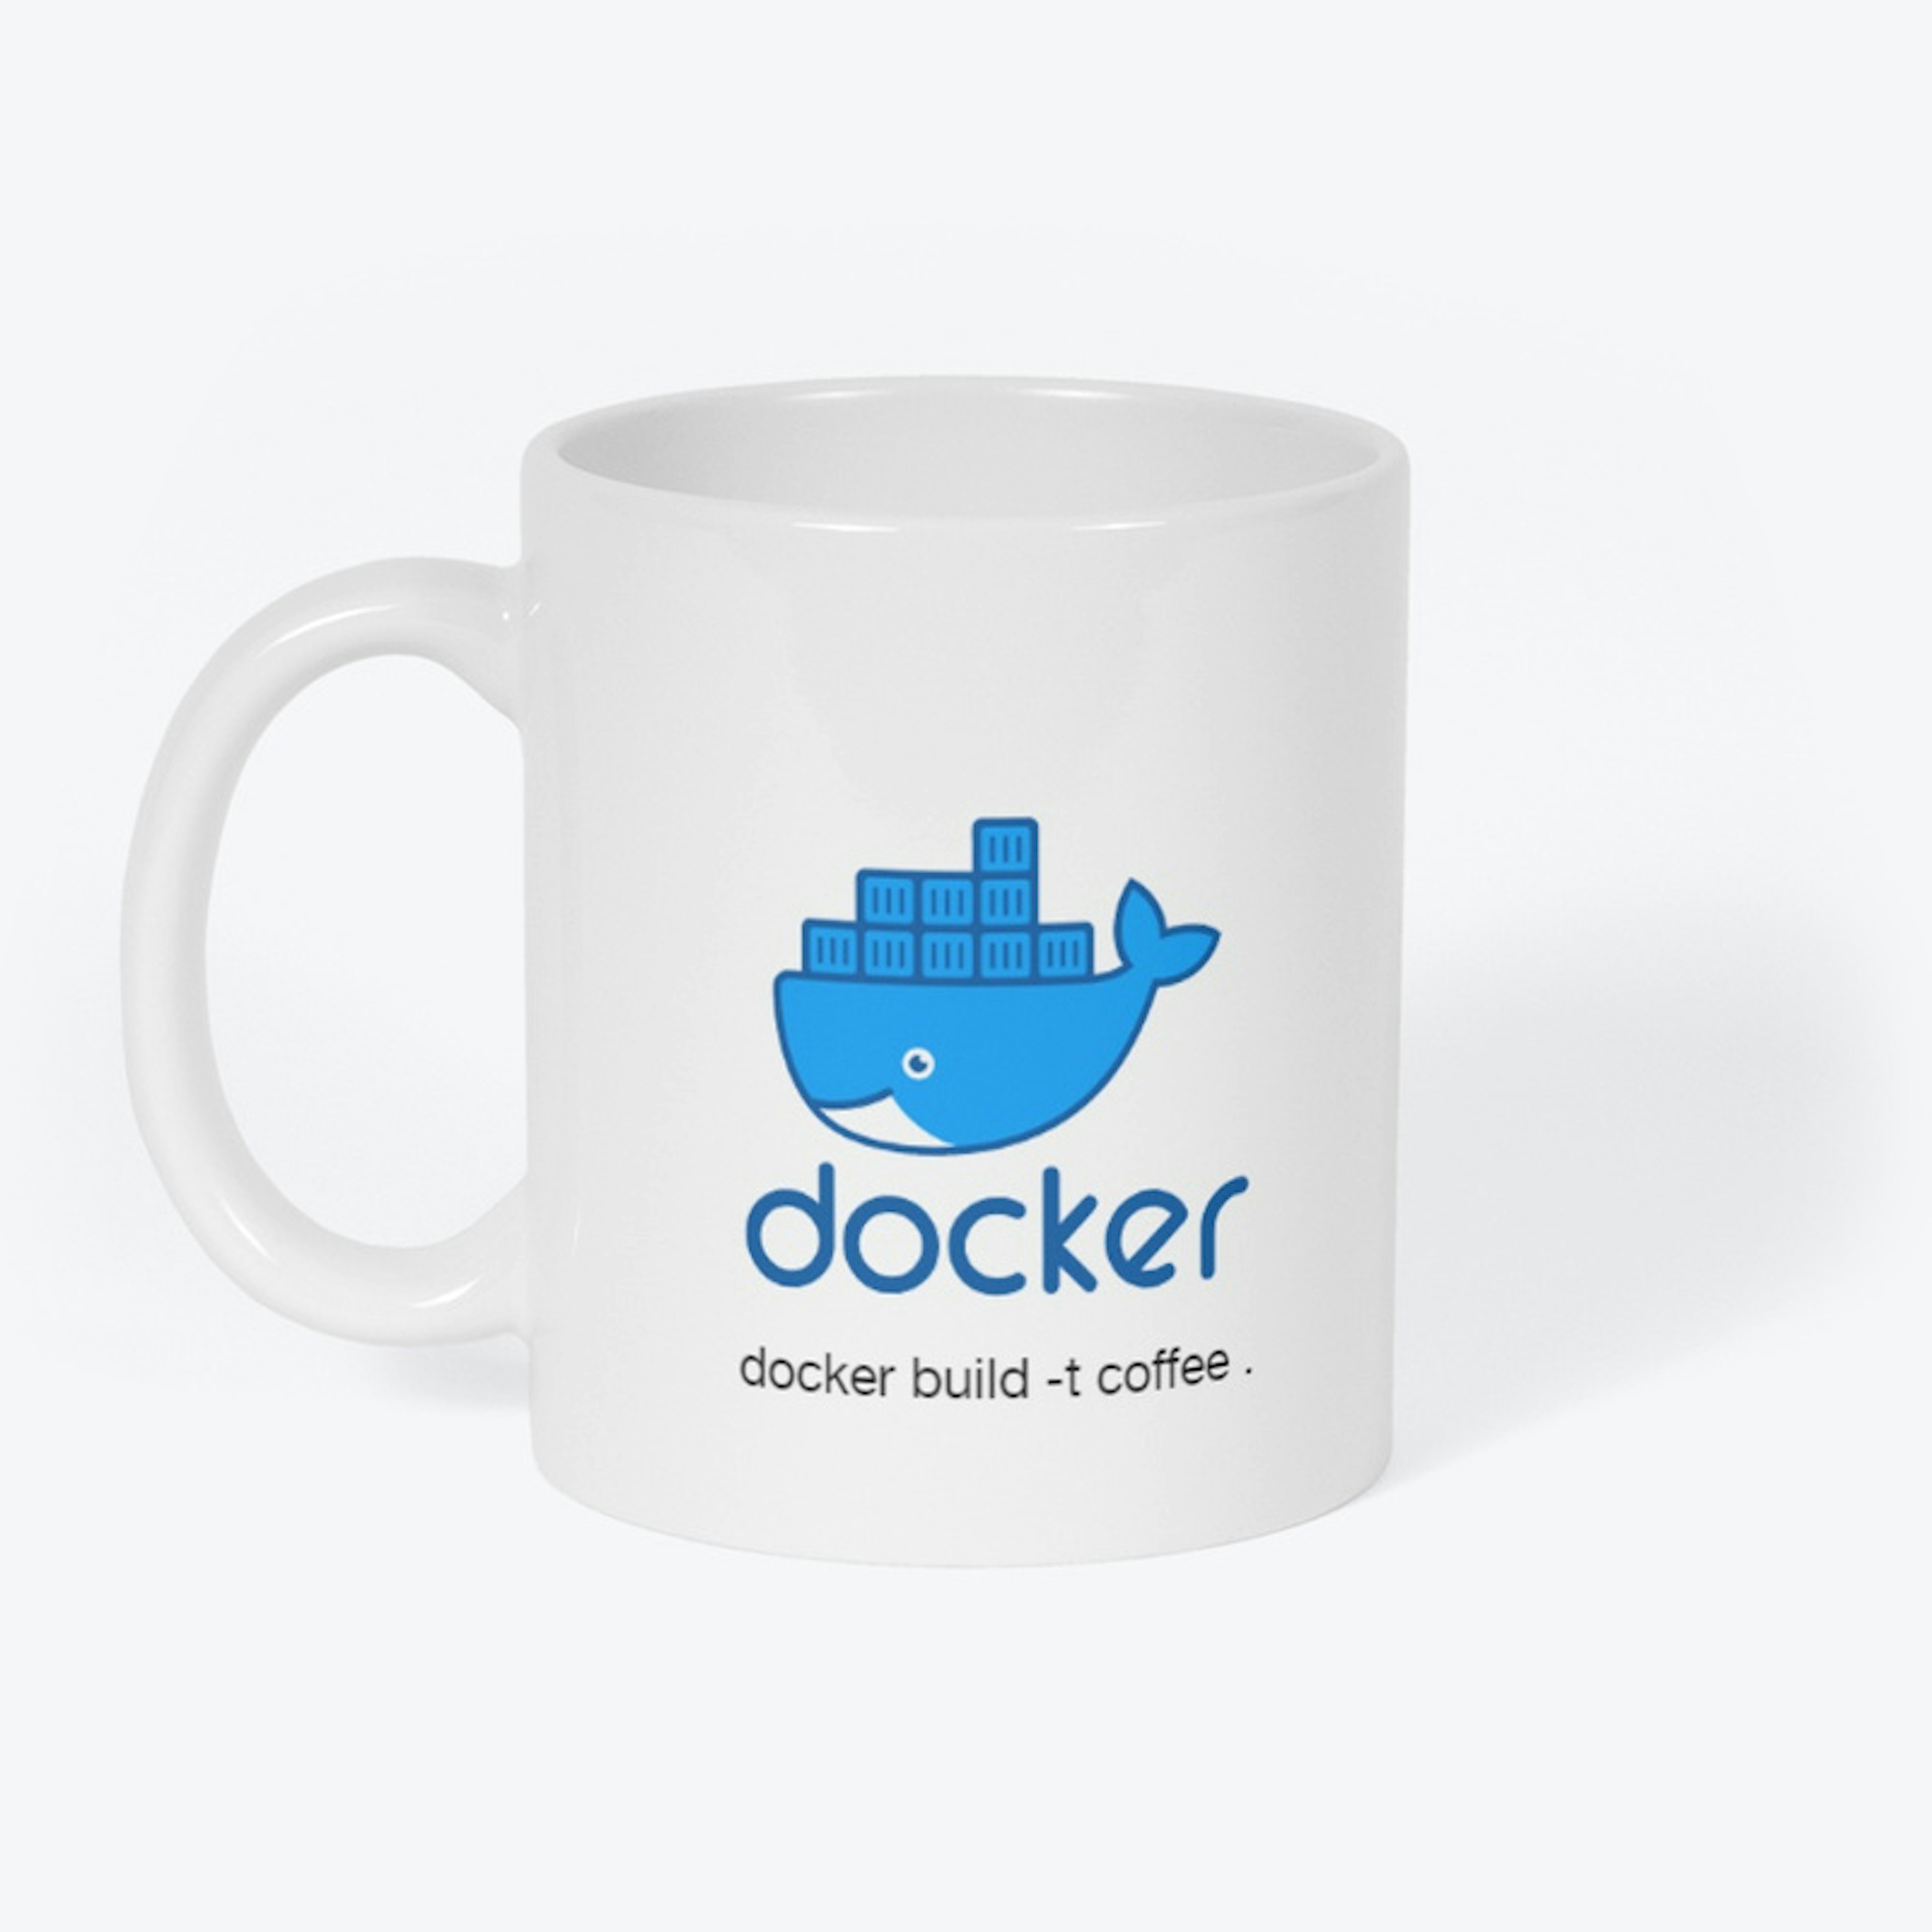 Docker Mug for docker lovers